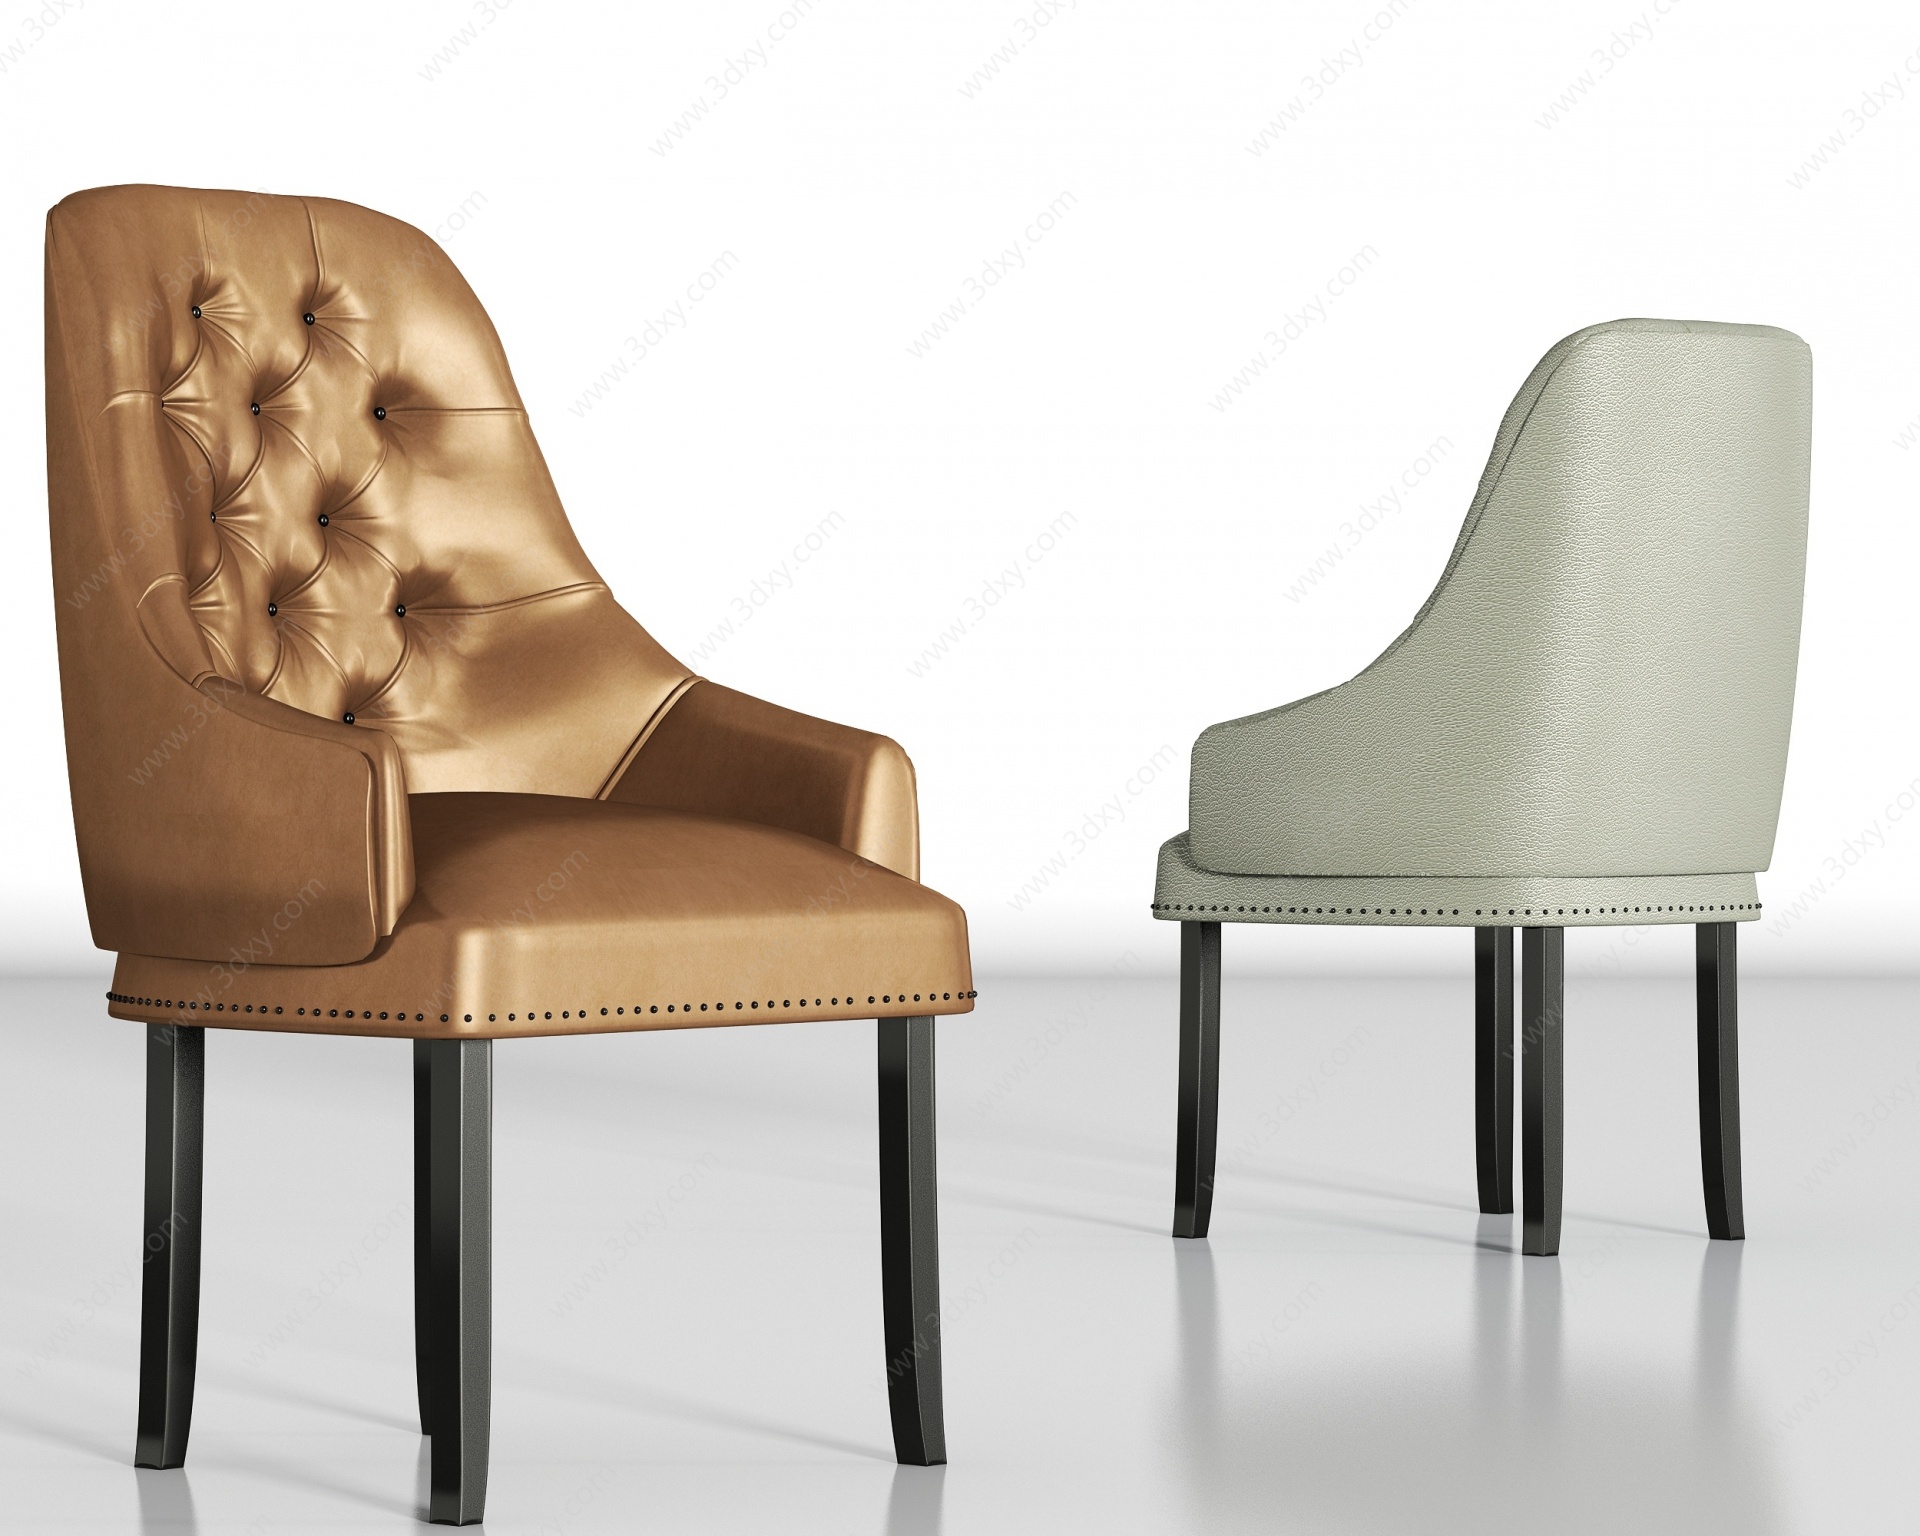 简欧皮革单椅组合3D模型